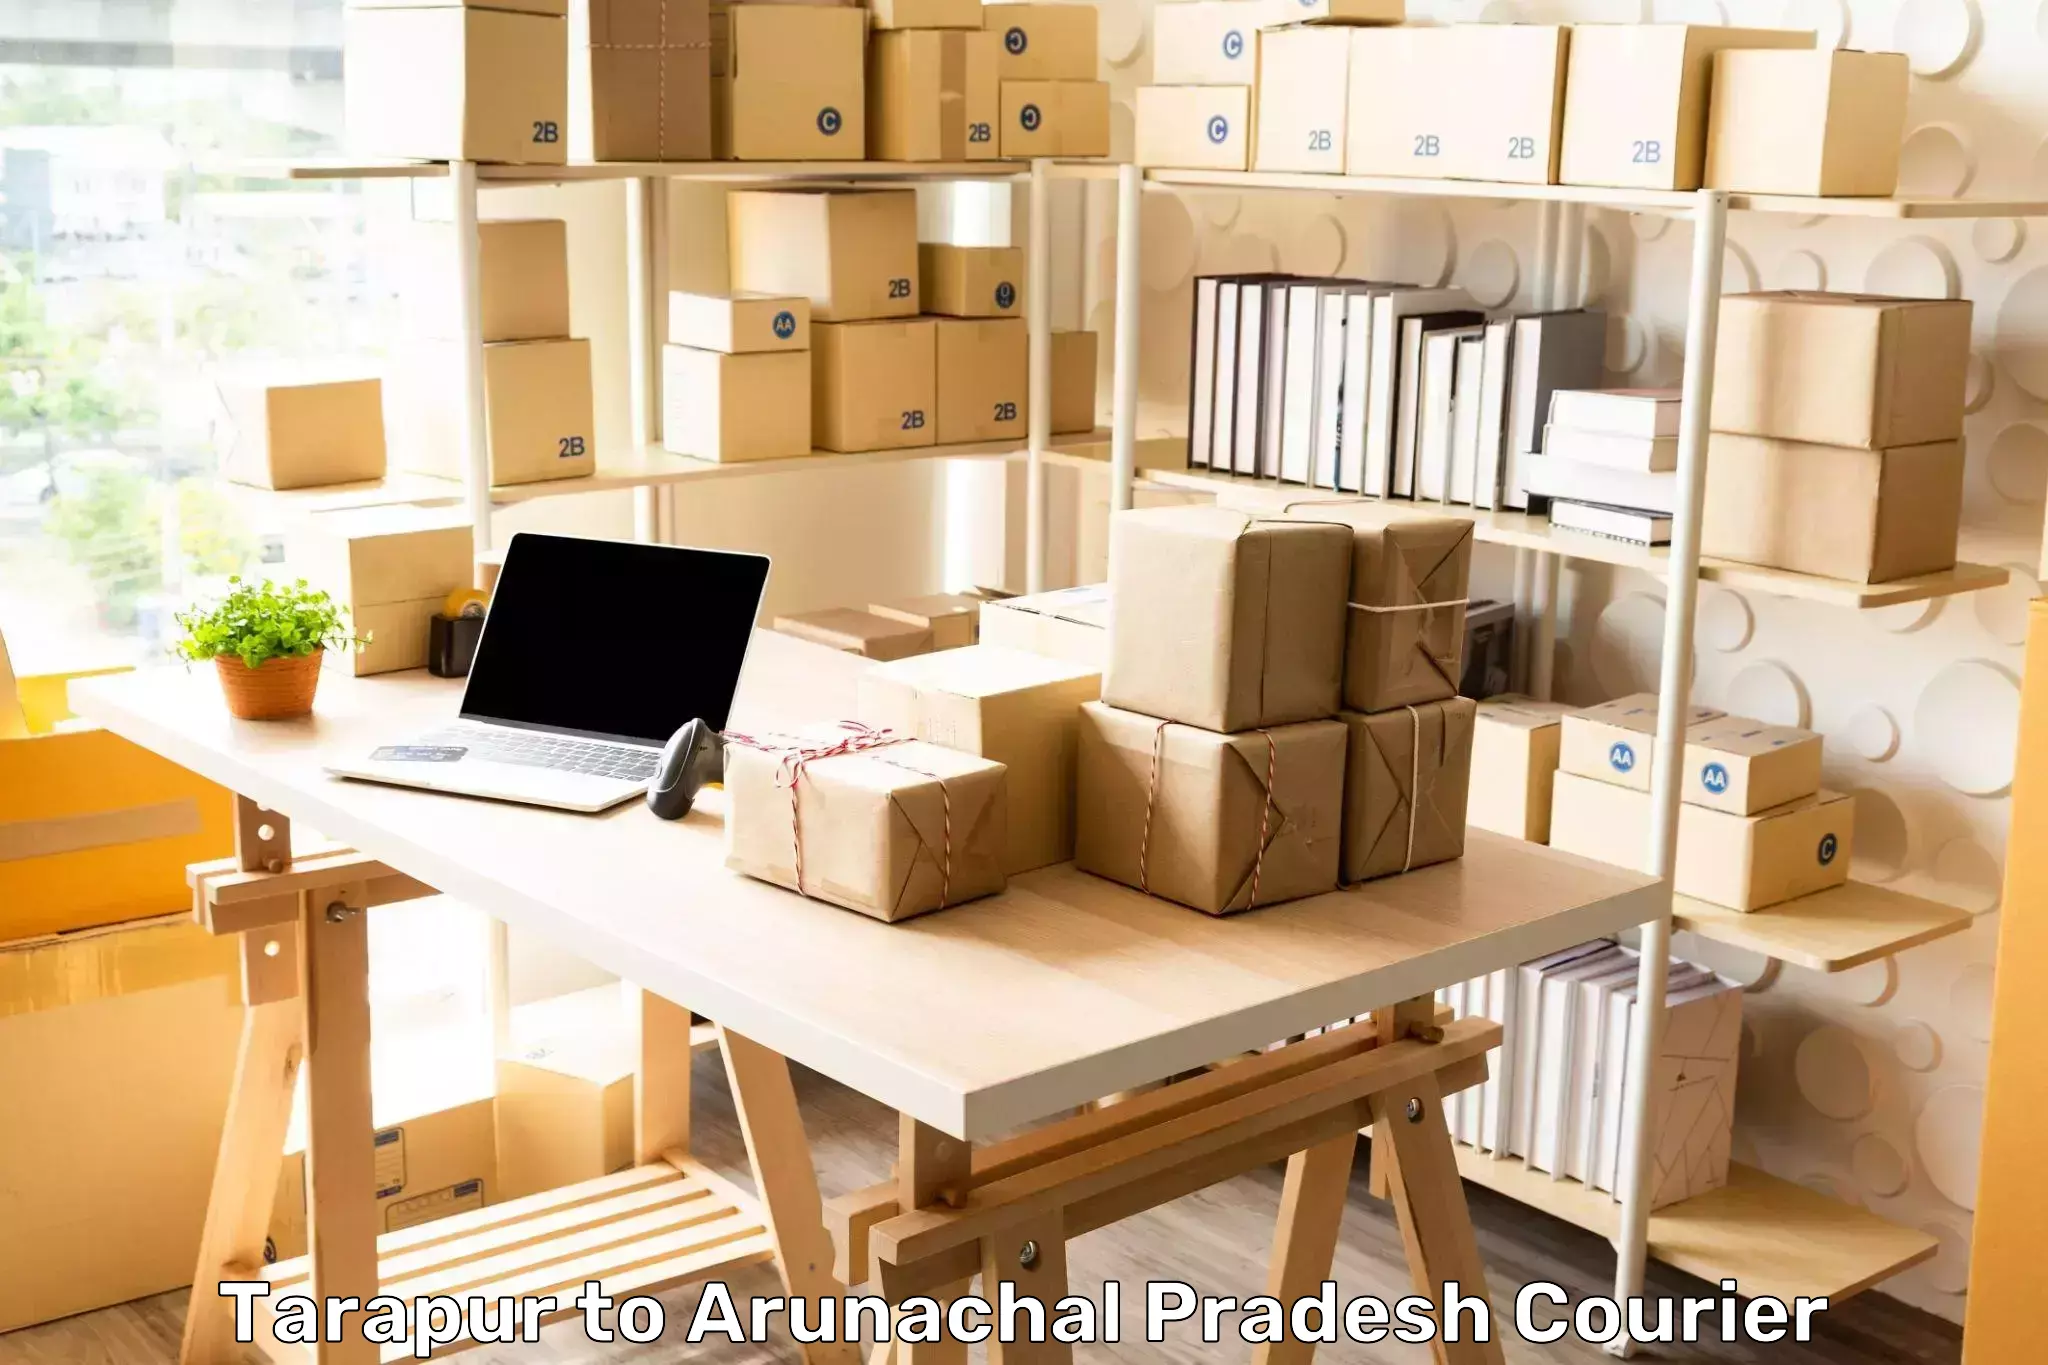 Efficient cargo handling Tarapur to Arunachal Pradesh